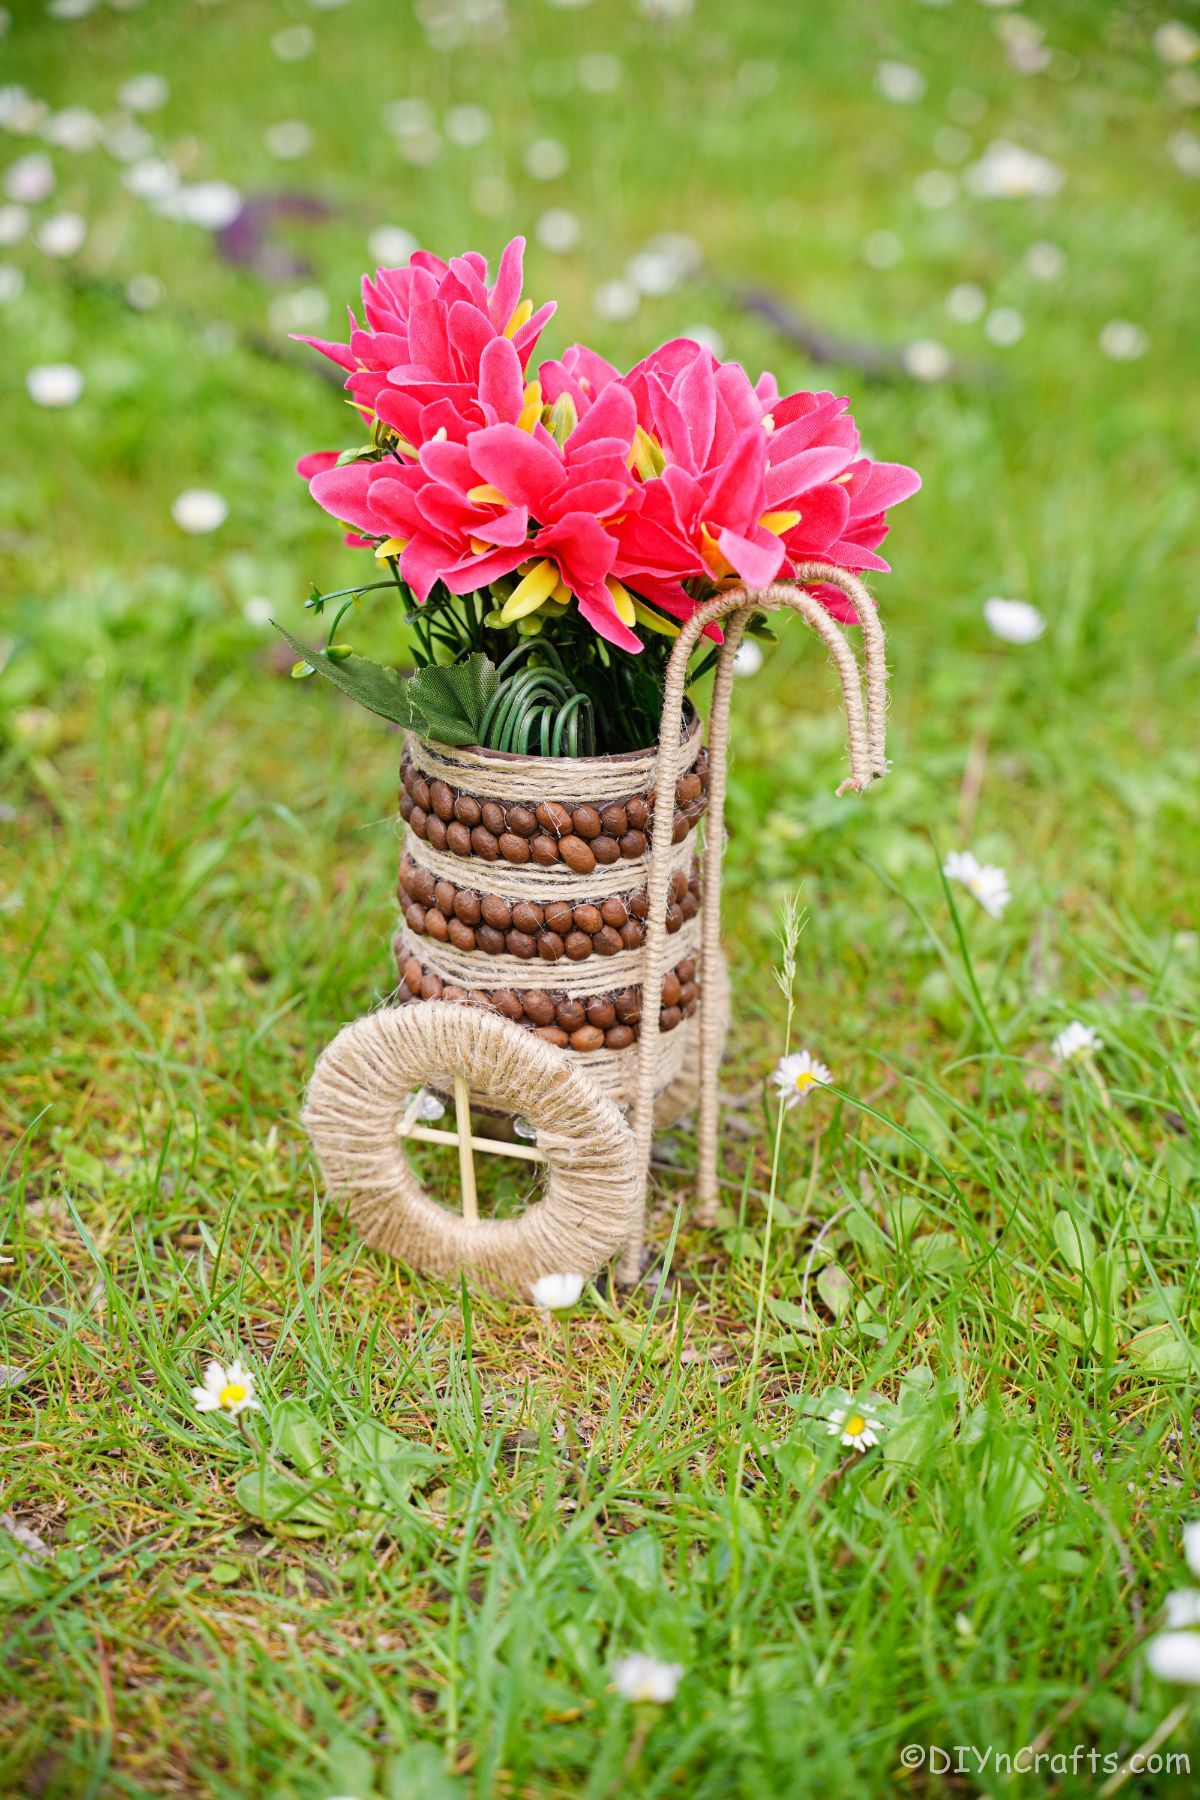 Vase de boîte de conserve enveloppé de ficelle avec des fleurs roses sur l'herbe